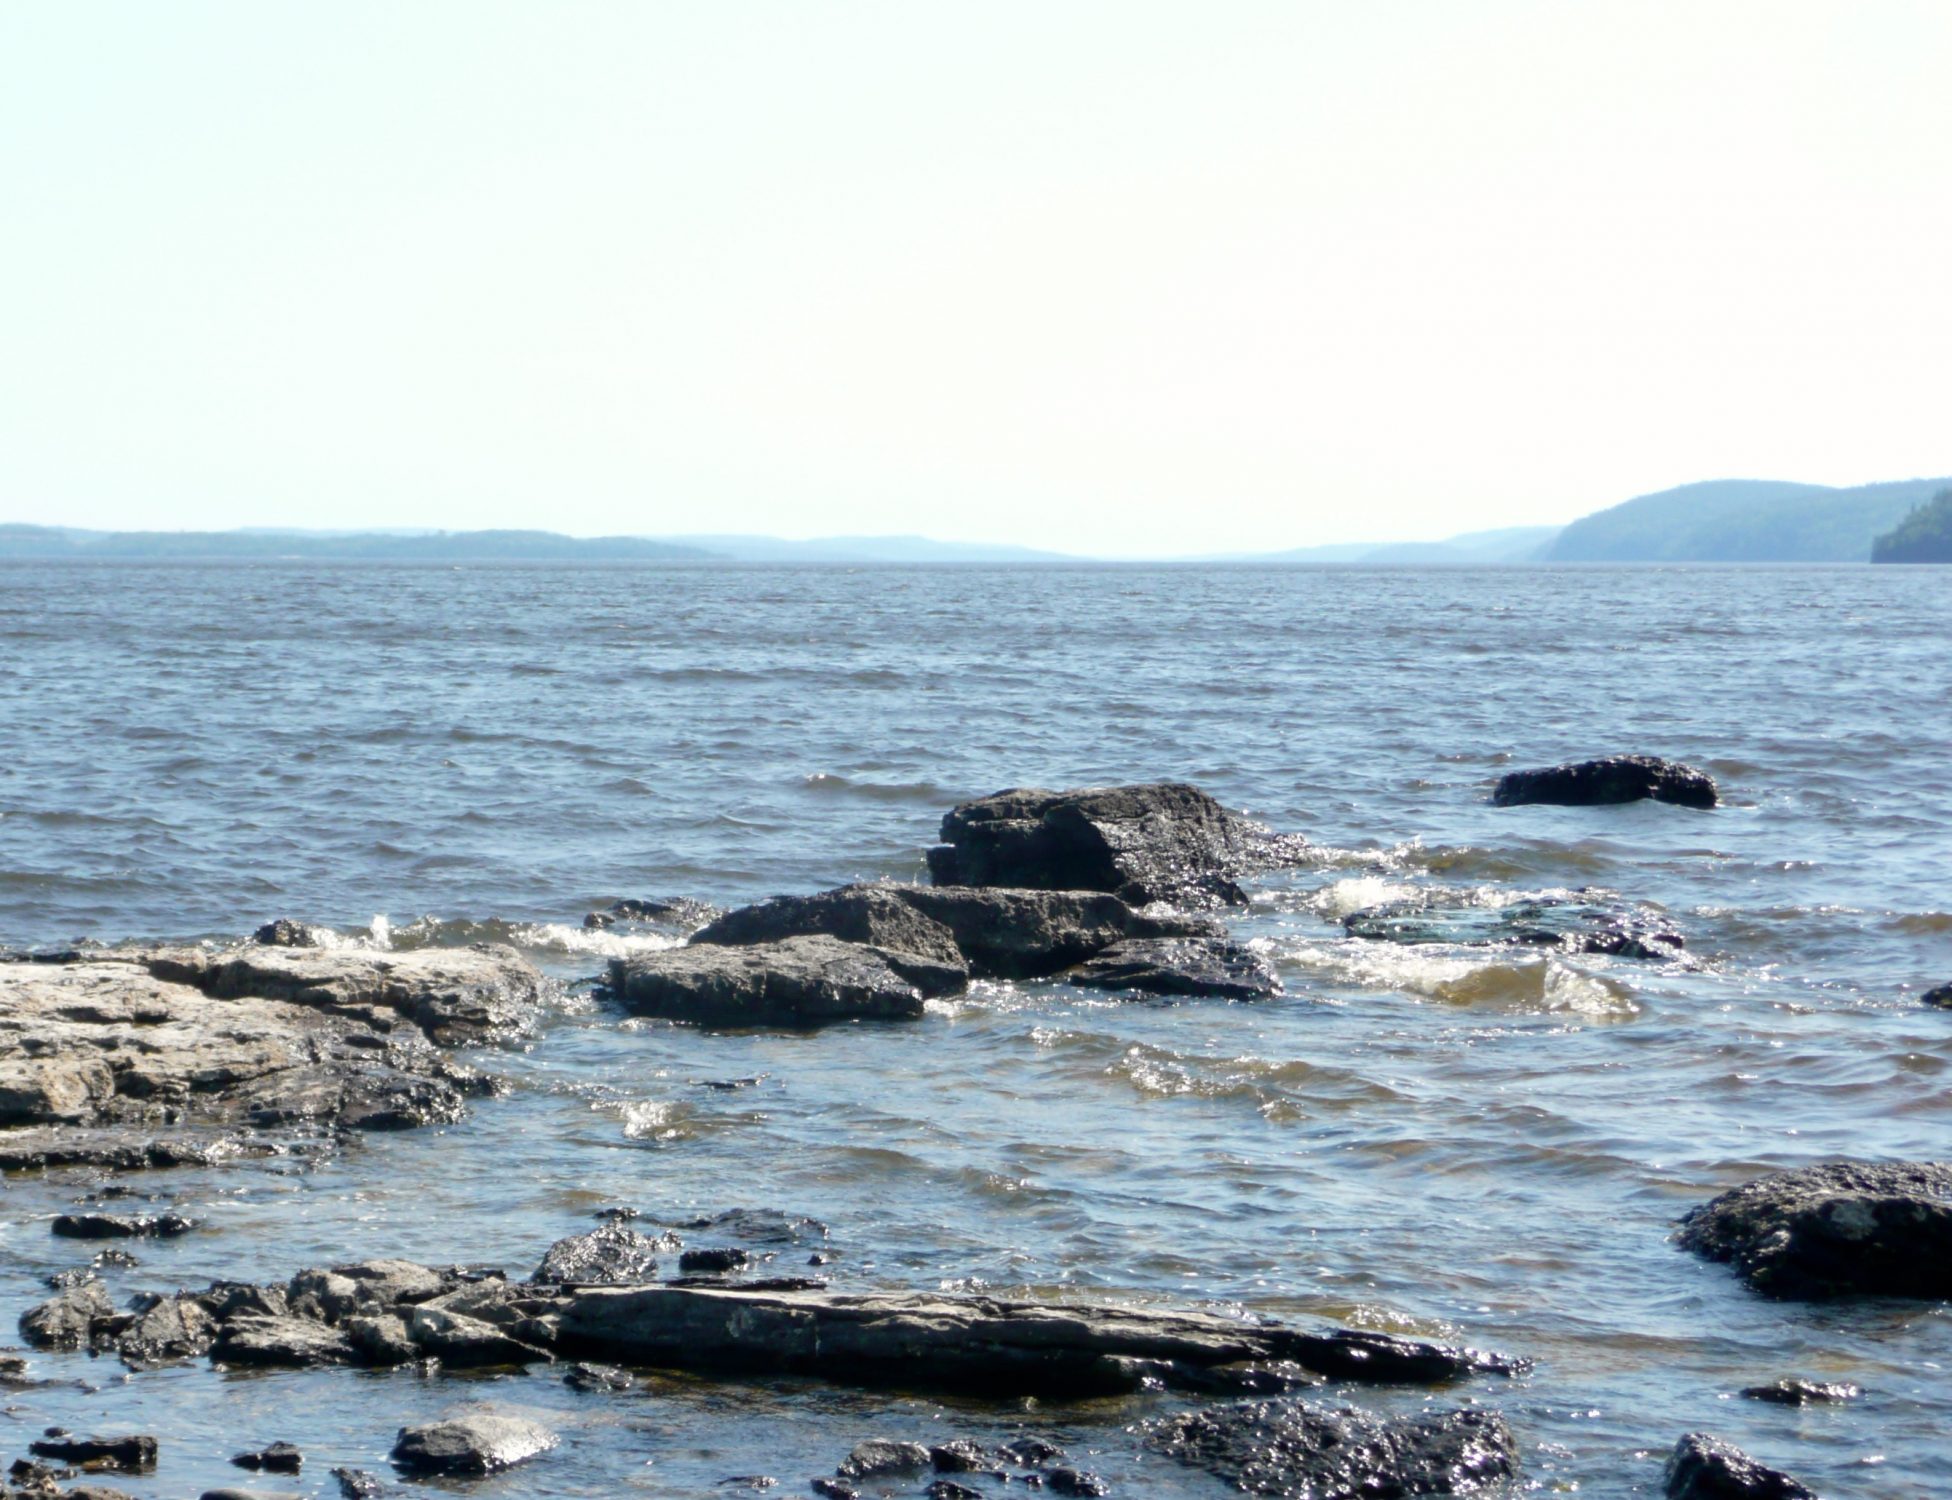 Looking South from Farr Island. The view is simply astonishing and remind people of the Saguenay Fjords. / La vue à partir du bout sud de l'île Farr. Une vue vraiment splendide qui rappelle souvent aux gens les fjords du Saguenay.